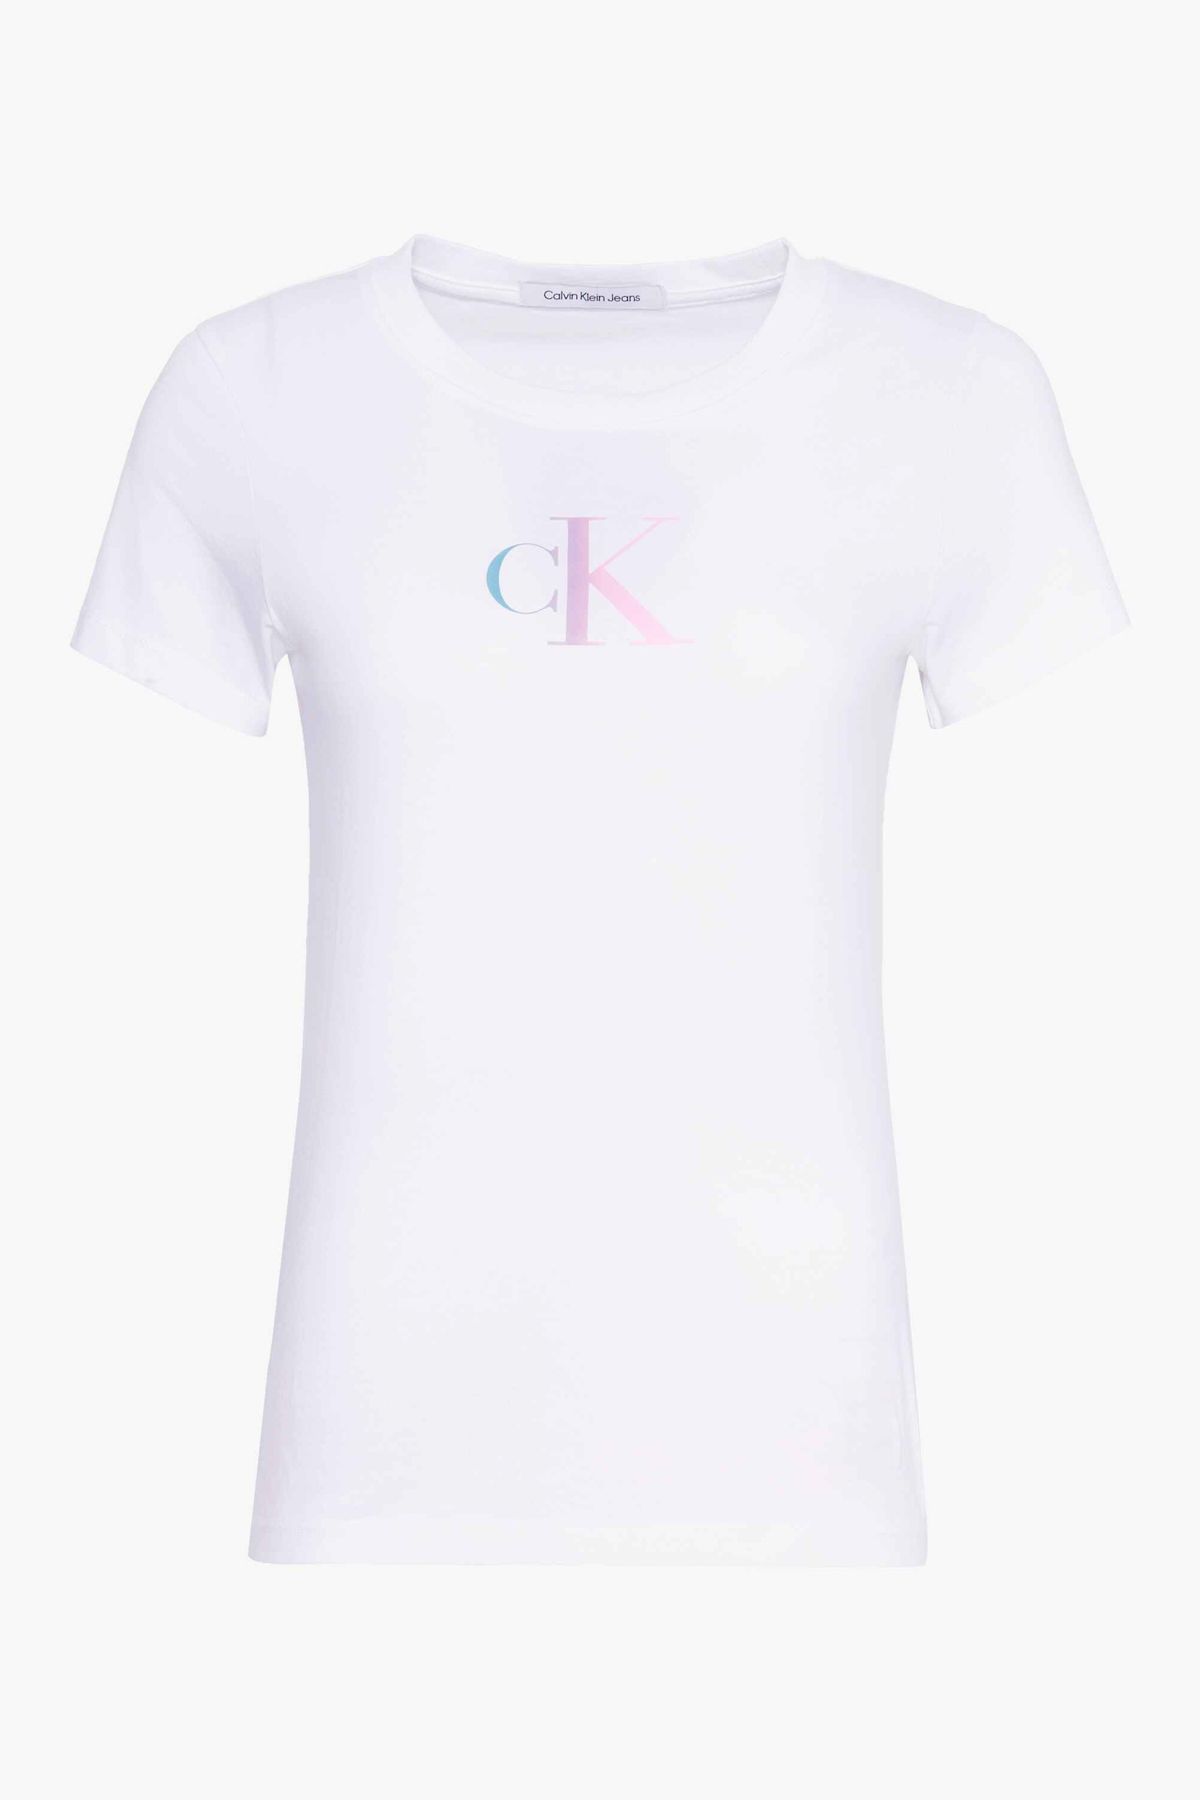 Calvin Klein Trendyol T-Shirt Damen - Hellweiß / Mädchen